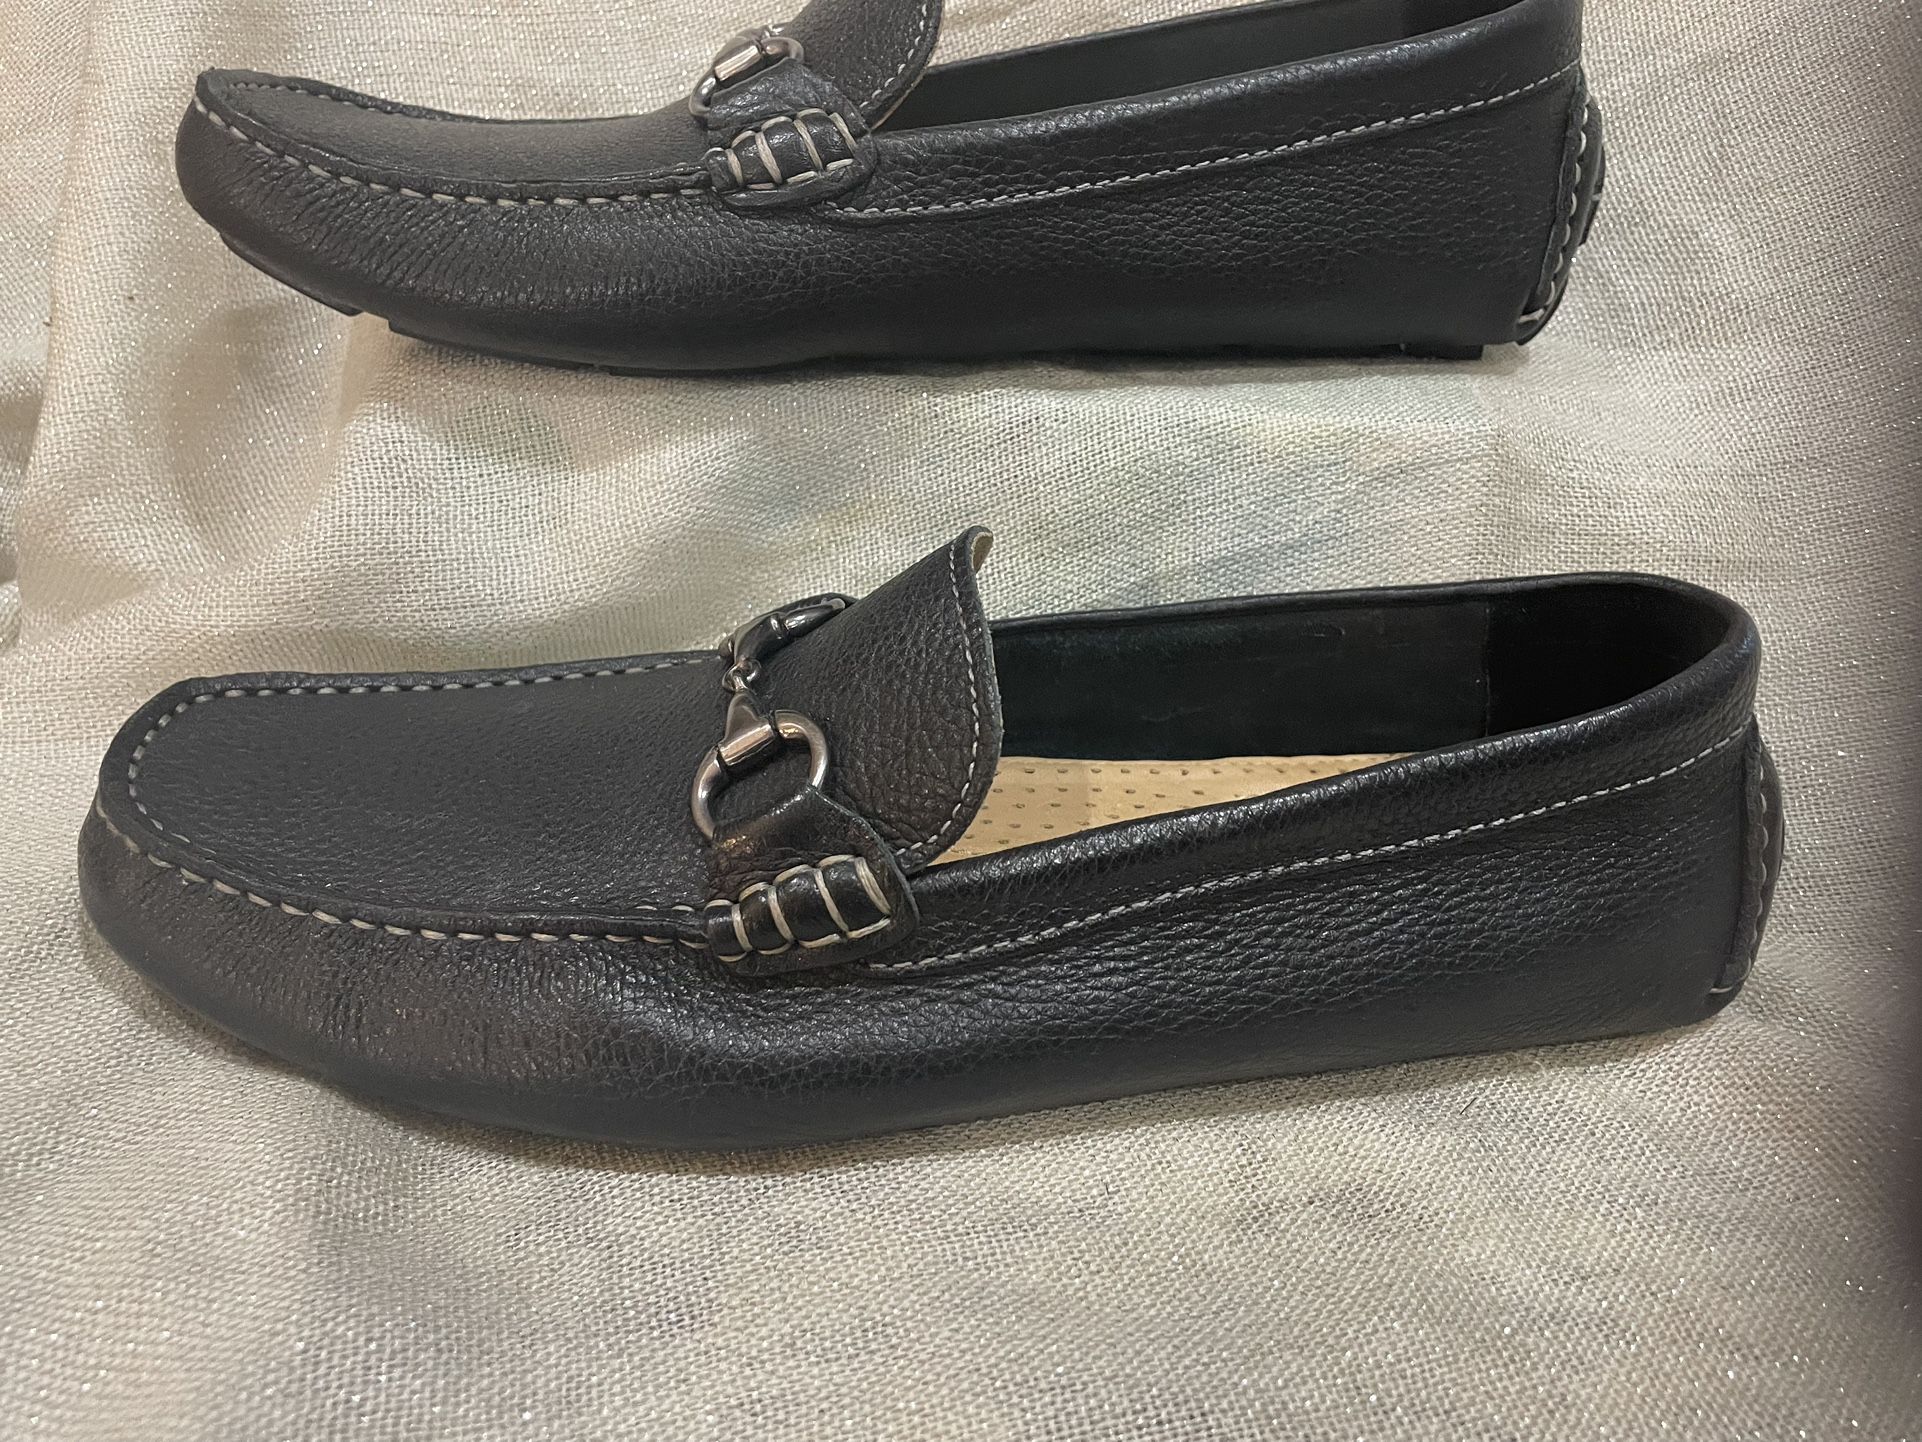 Rosefarve ukuelige milits Men's Black leather loafer/slip on Size 10. for Sale in Queen Creek, AZ -  OfferUp